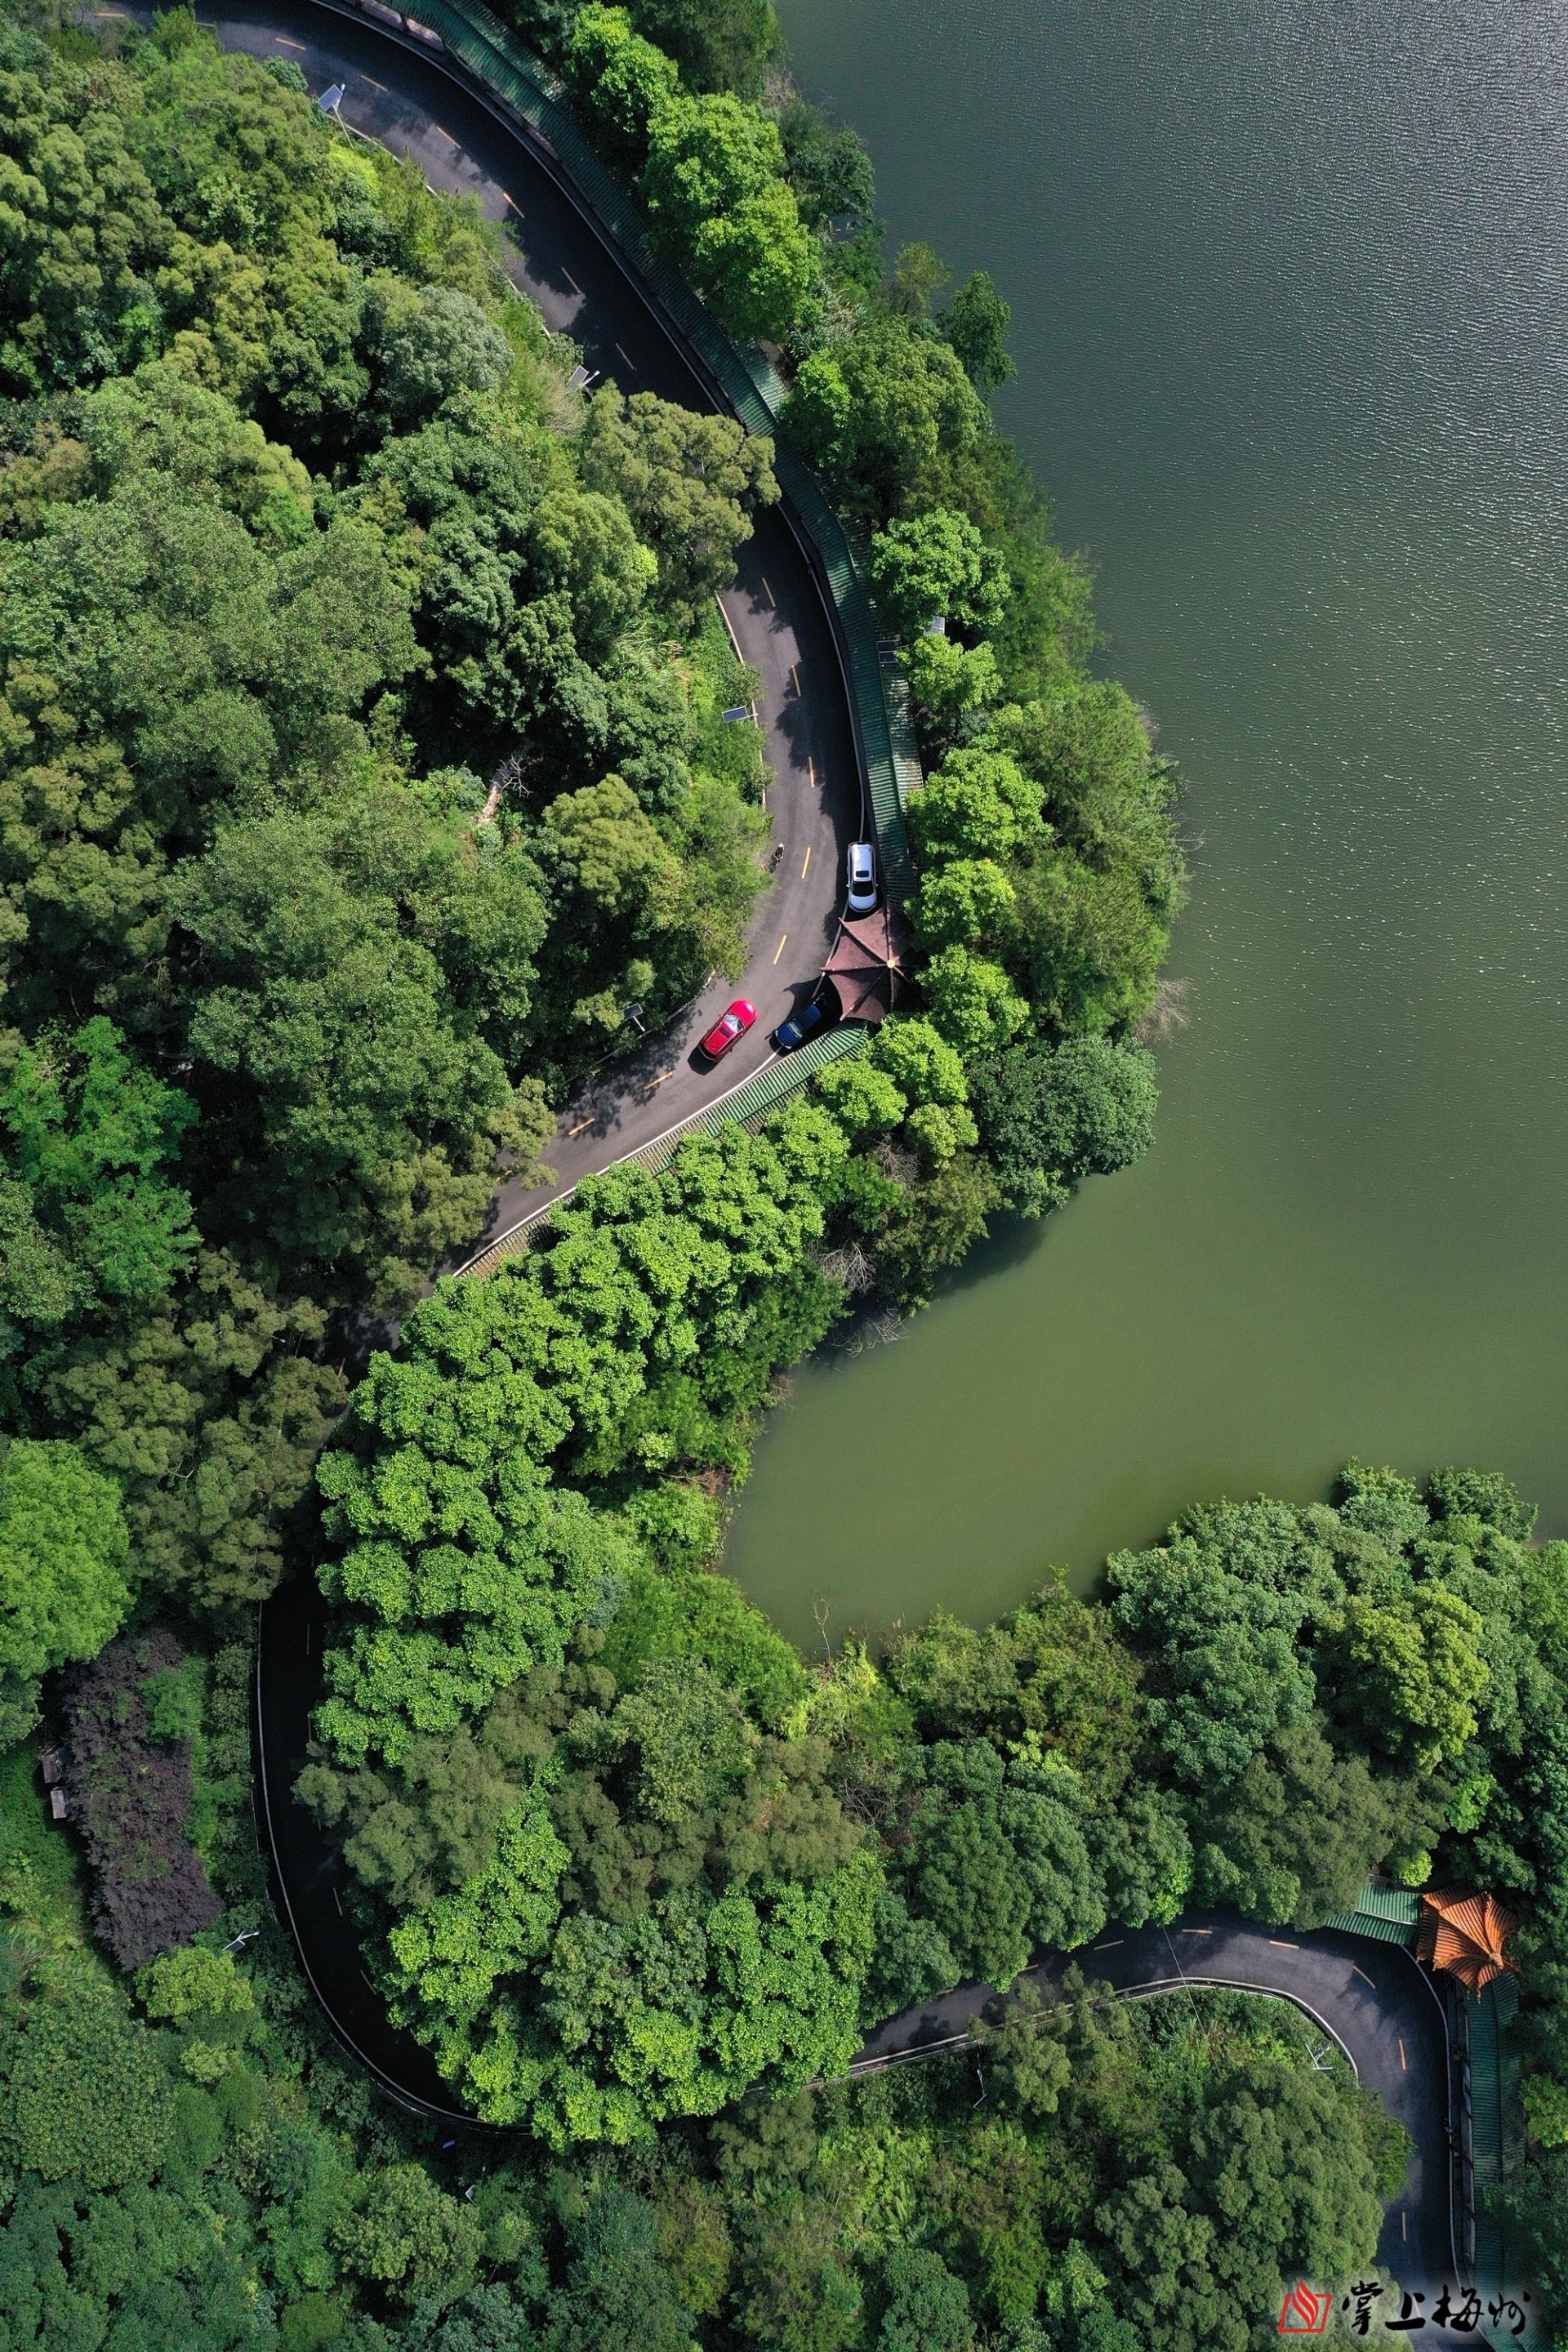 泮坑风景区的环湖绿道绿树环绕,风景秀美,是市民休闲健身的好去处